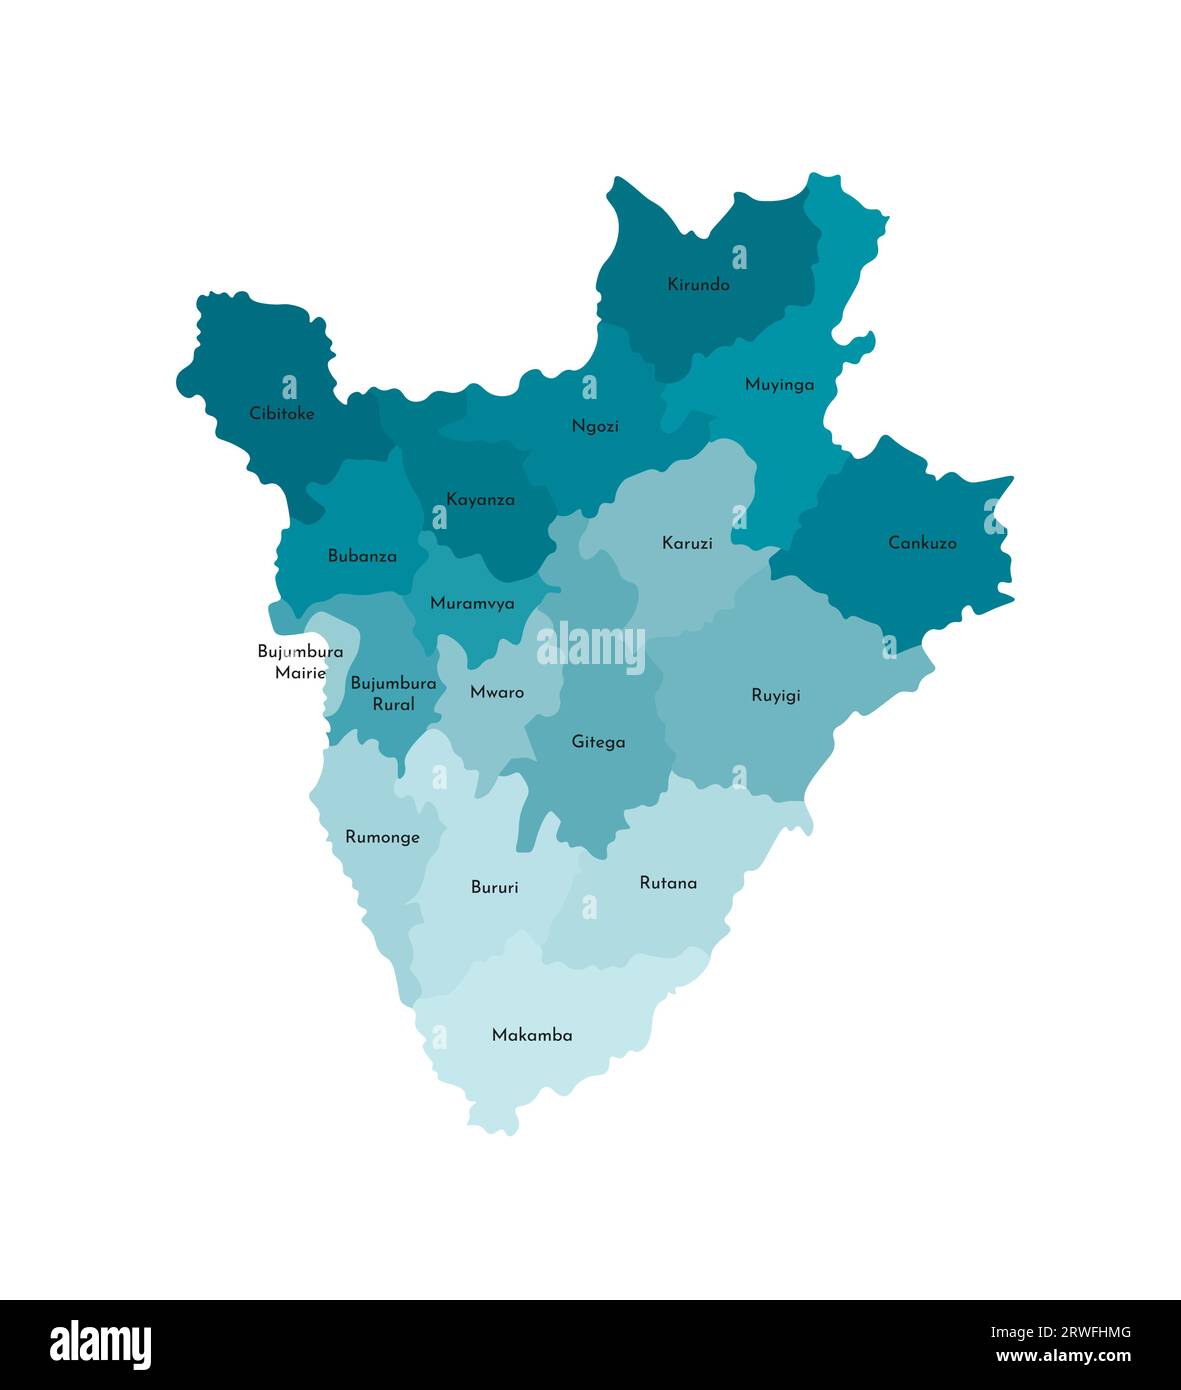 Vektorisolierte Darstellung der vereinfachten Verwaltungskarte Burundis. Grenzen und Namen der Provinzen (Regionen). Farbenfrohe blaue Khaki-Silhouette Stock Vektor